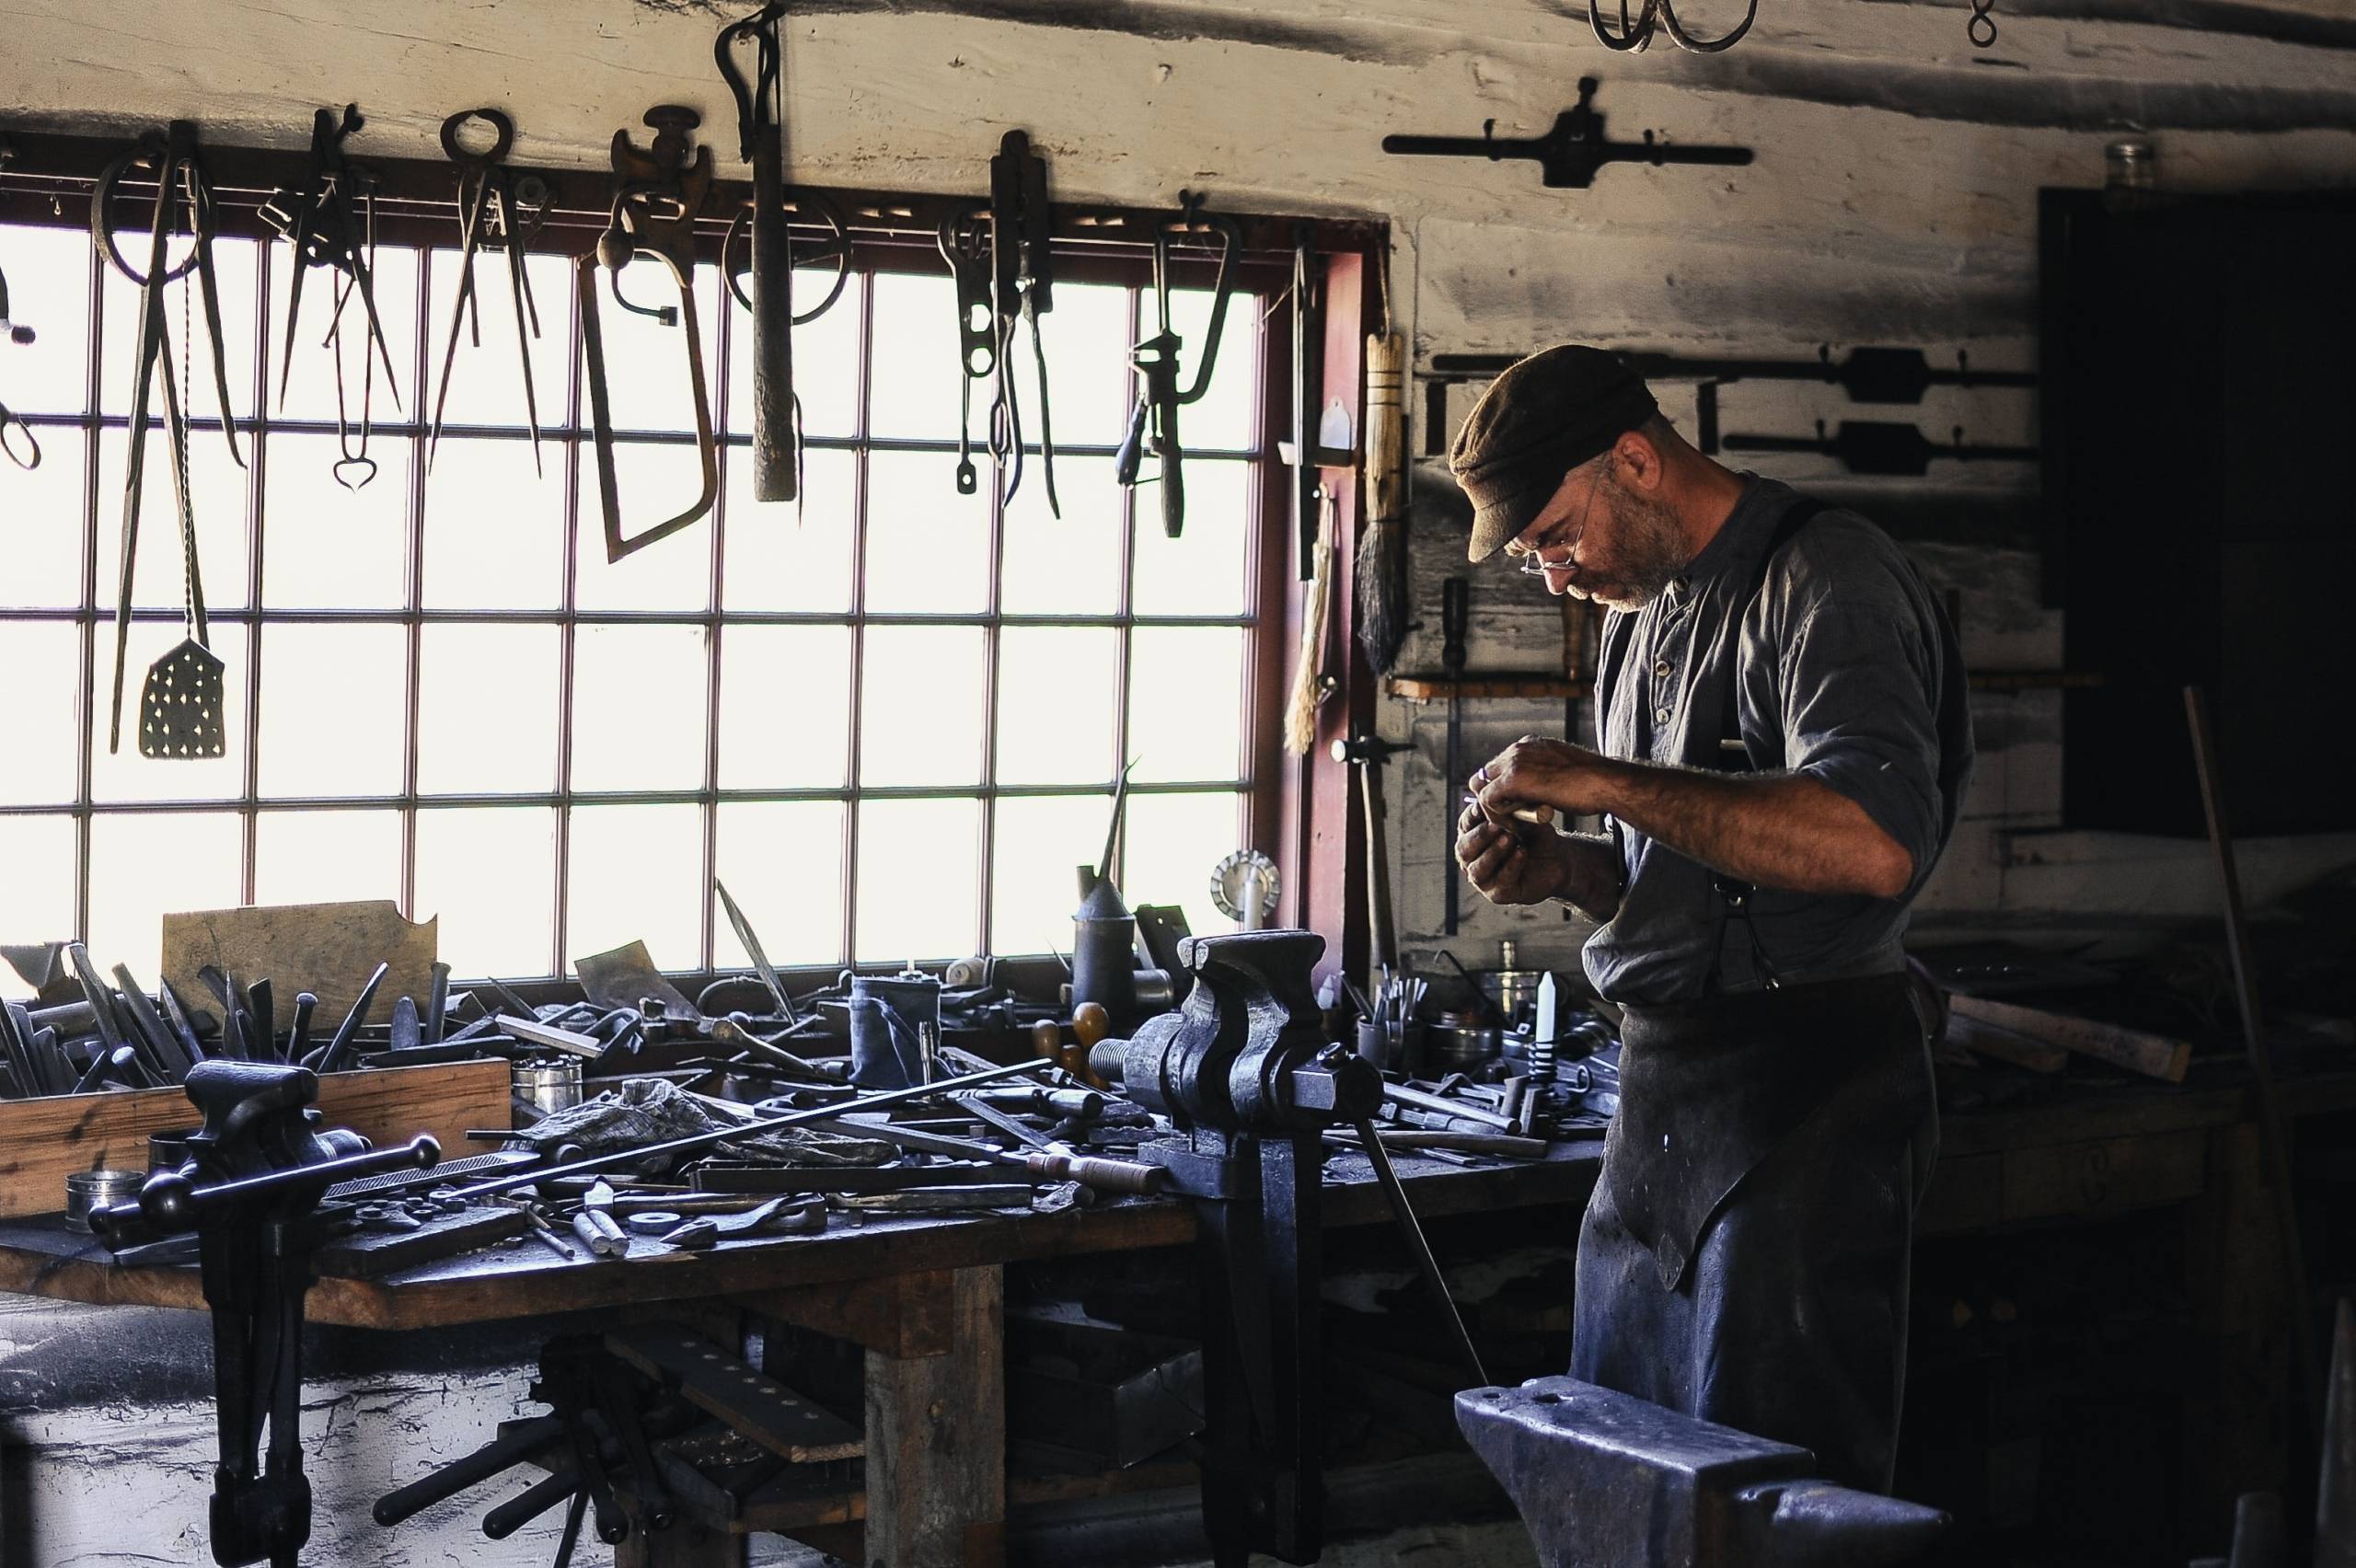 blacksmith with many tools